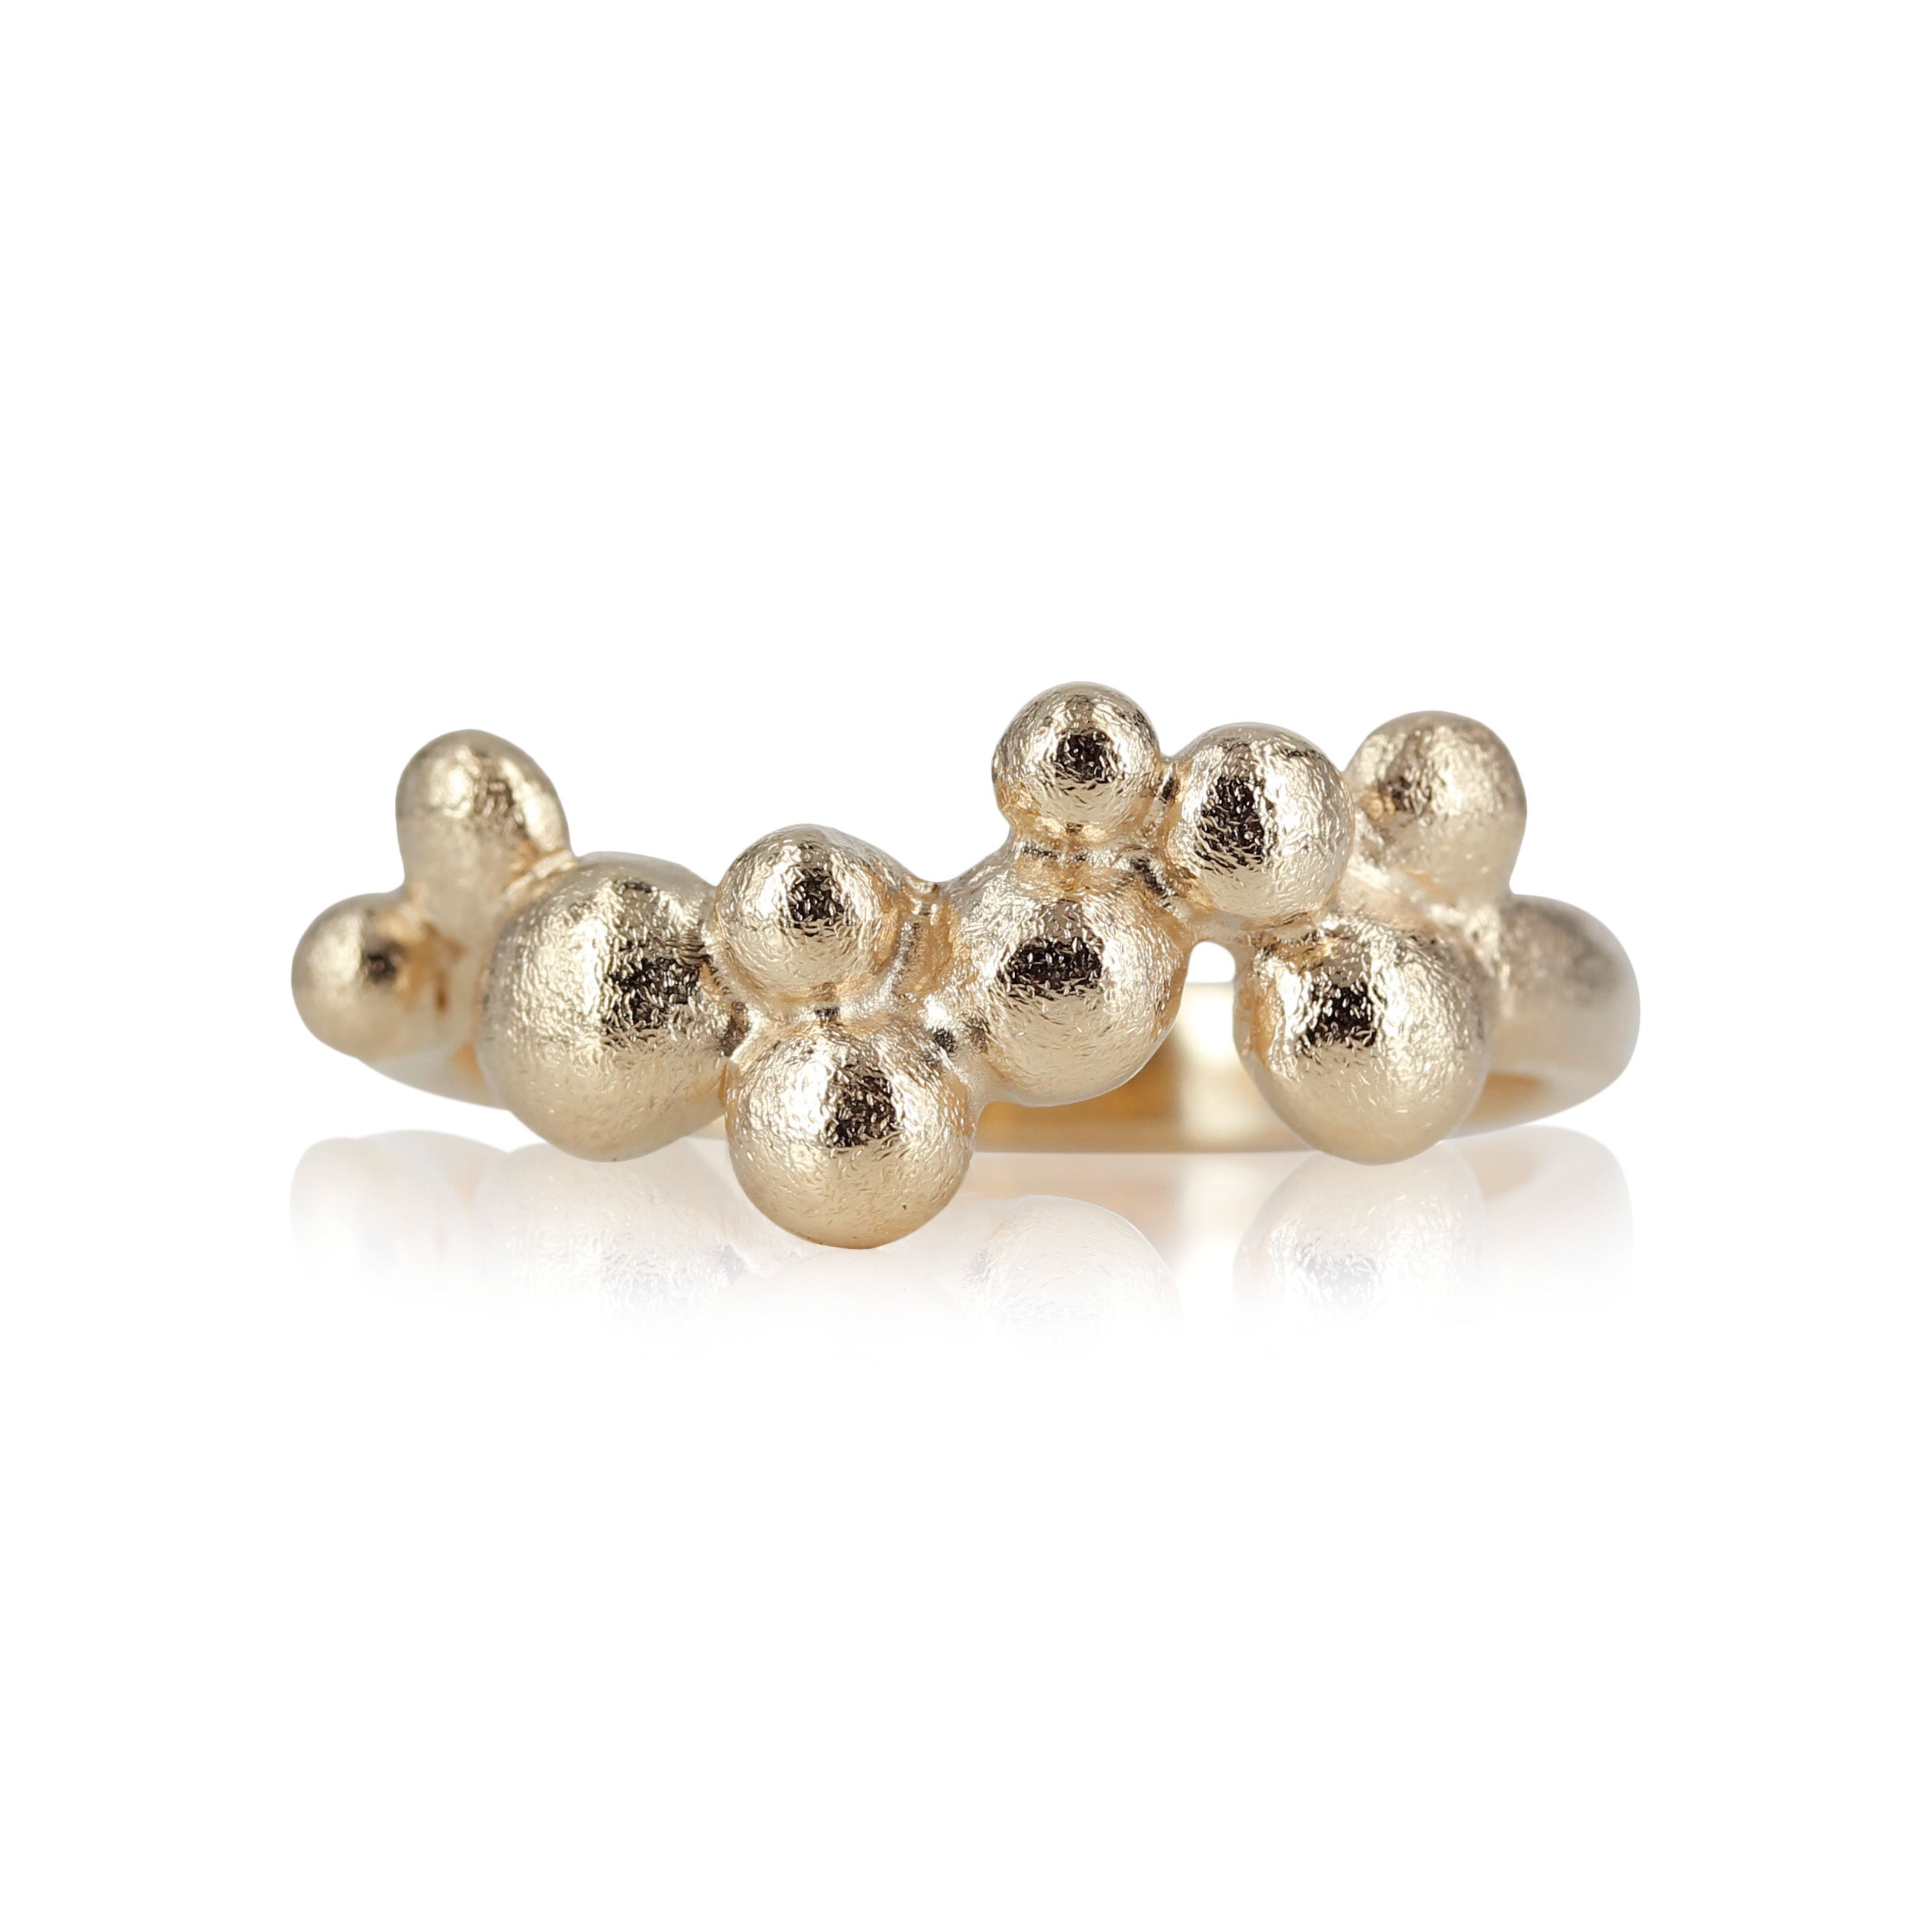  14 kt guld ring, i organiske design, små fine guld kugler der danser.  Det er muligt at isætte diamanter i de fine bobler, kontakt os på guldsmede værkstedet og hør om mulighederne. 